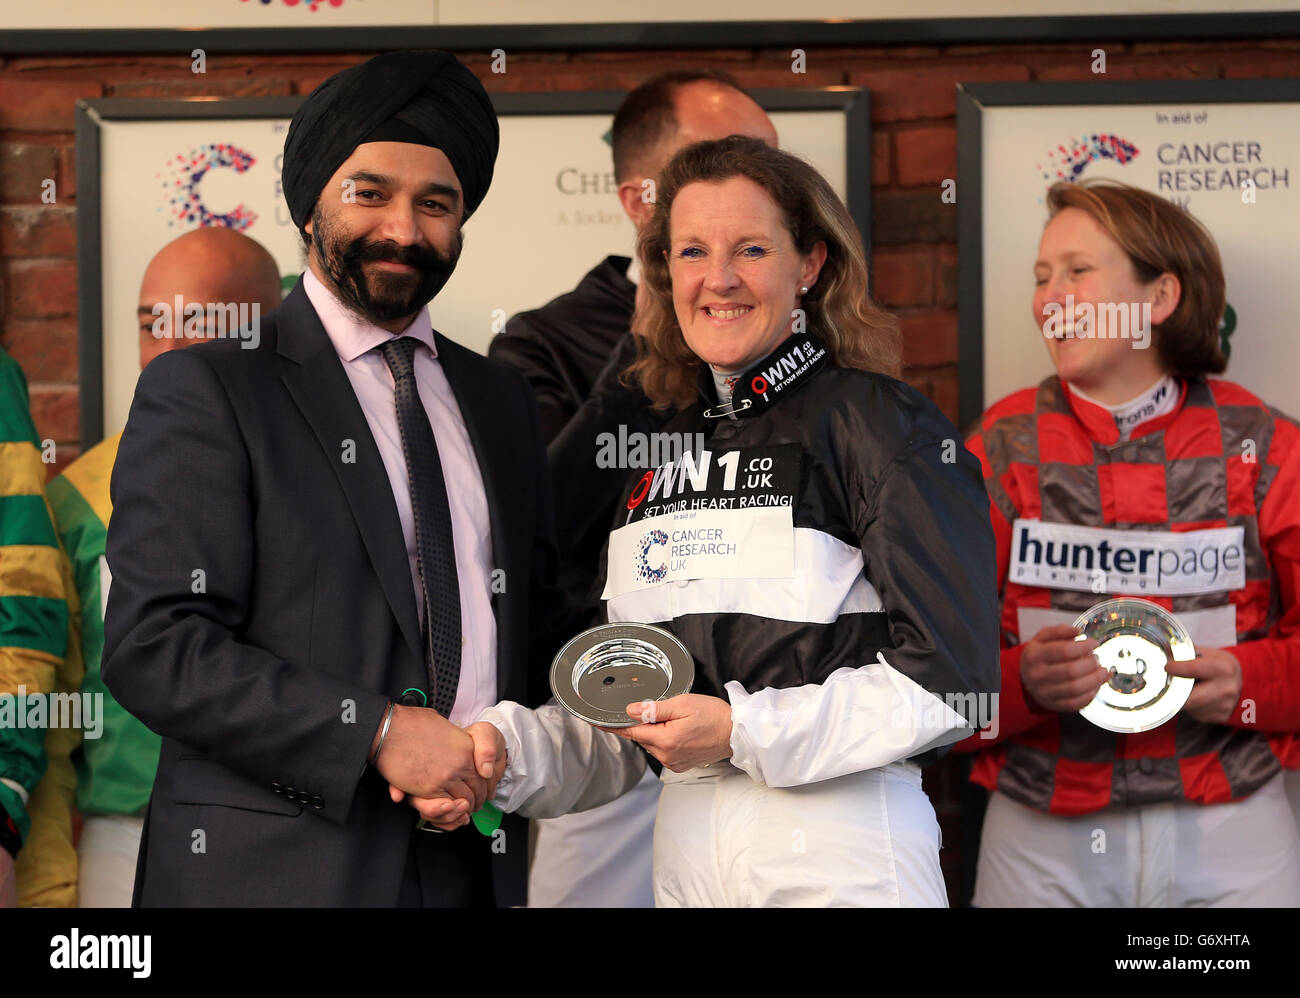 Heather Kemp nimmt eine Auszeichnung nach dem Cancer Research UK entgegen Charity-Rennen während des St. Patrick's Day auf der Cheltenham Racecourse Stockfoto